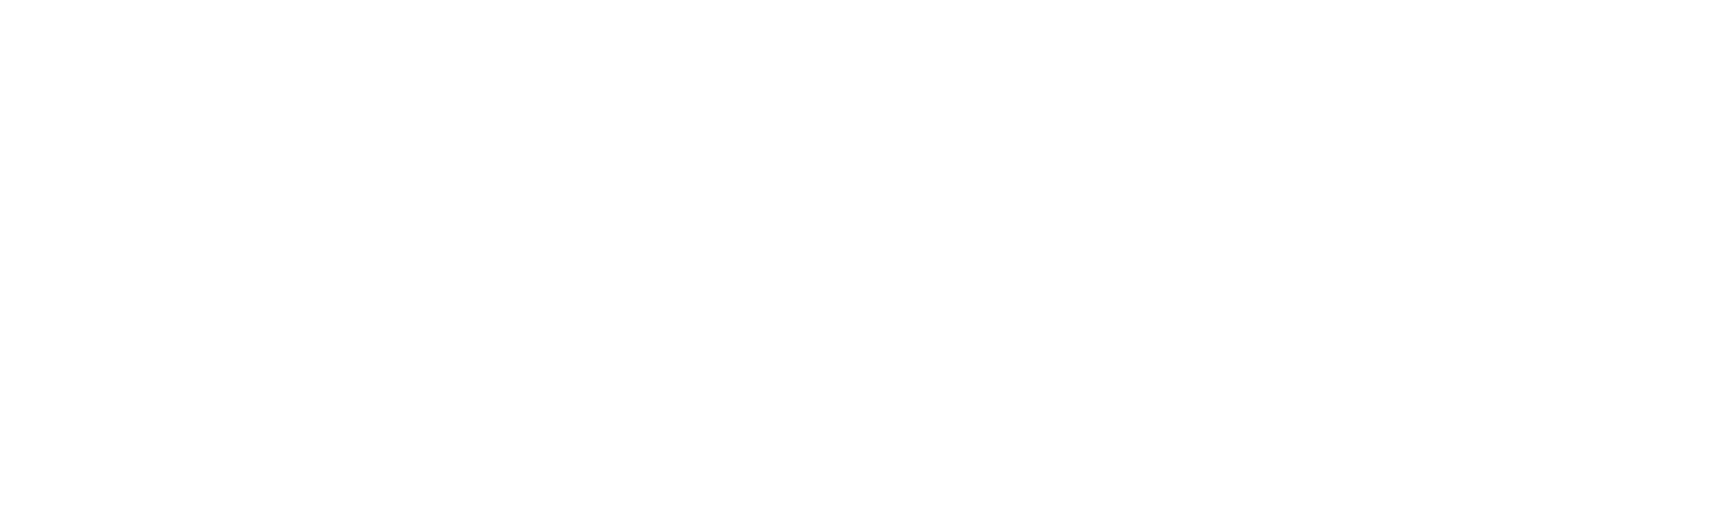 PotlatchDeltic
 logo large for dark backgrounds (transparent PNG)